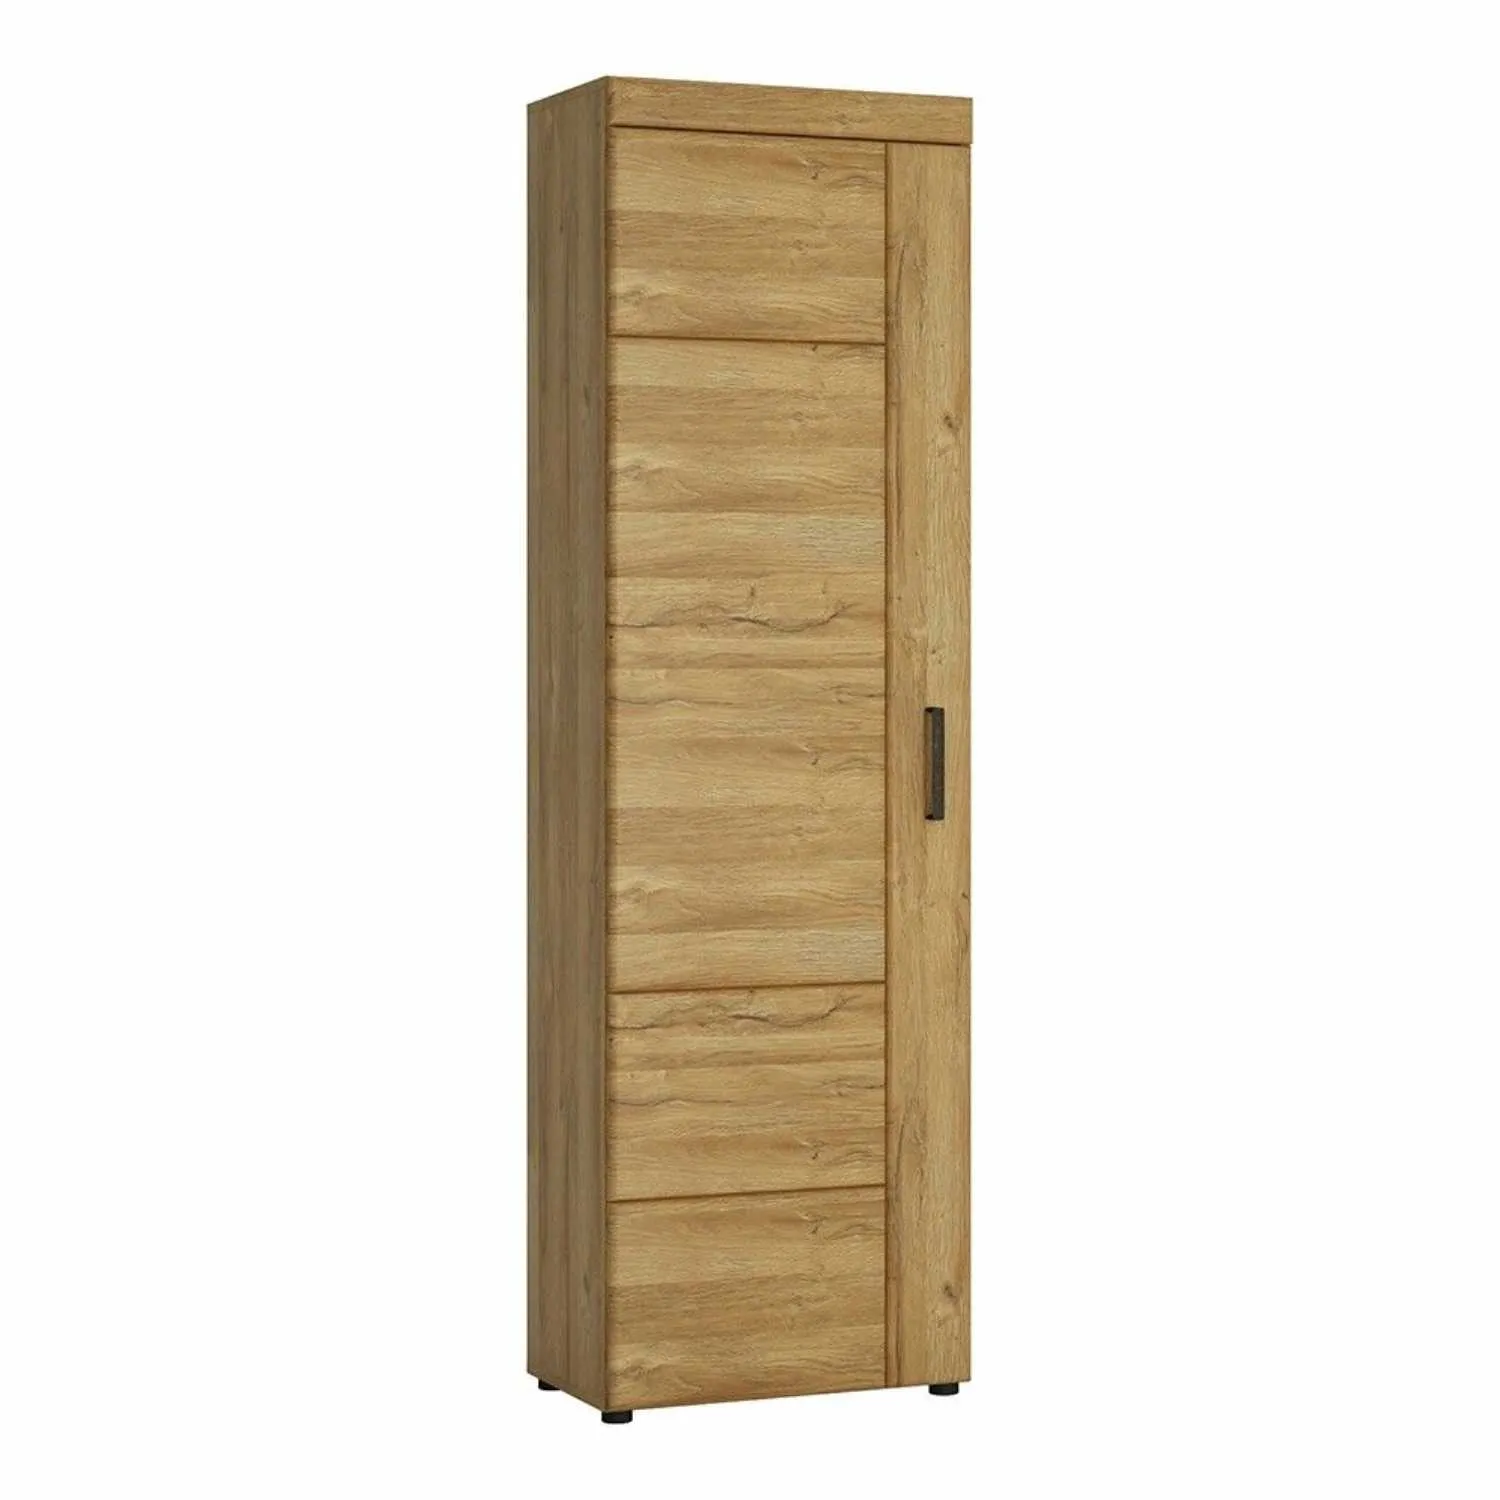 Medium Oak Tall Slim Storage Media Cupboard LH 5 Shelves 195cm Tall